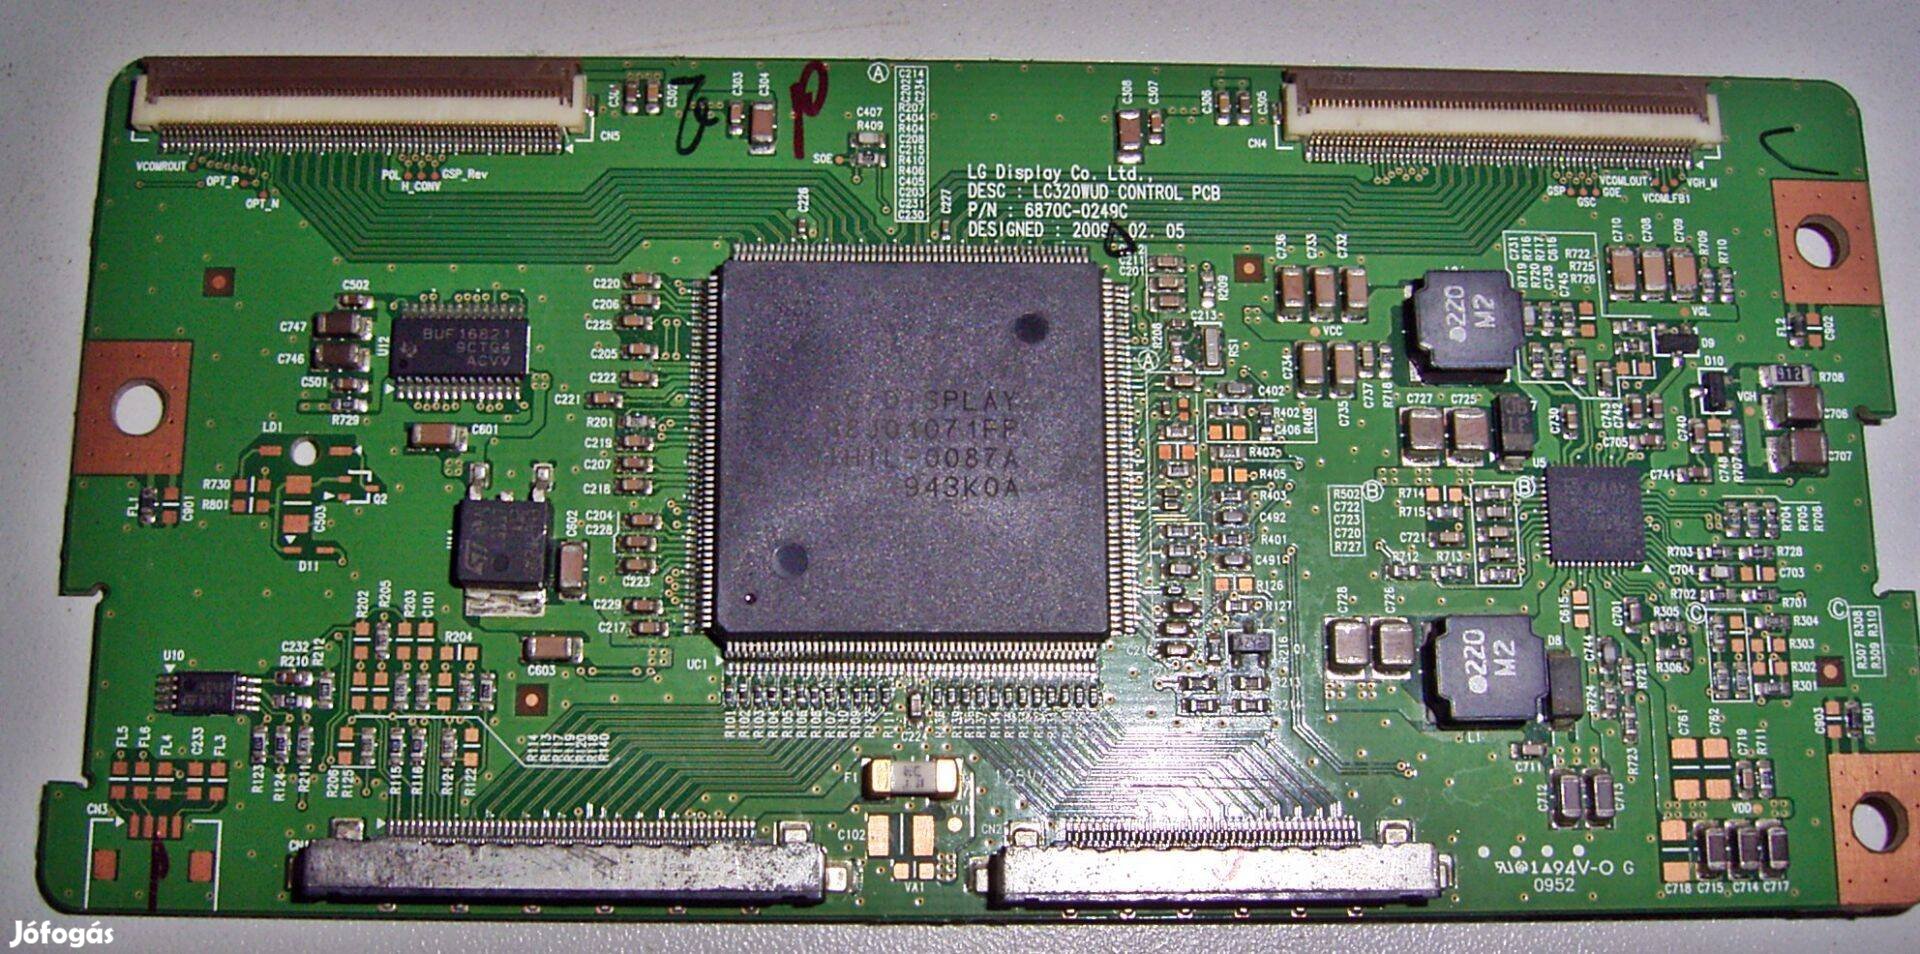 Eladó LG 6870C-0249C Tcon panel